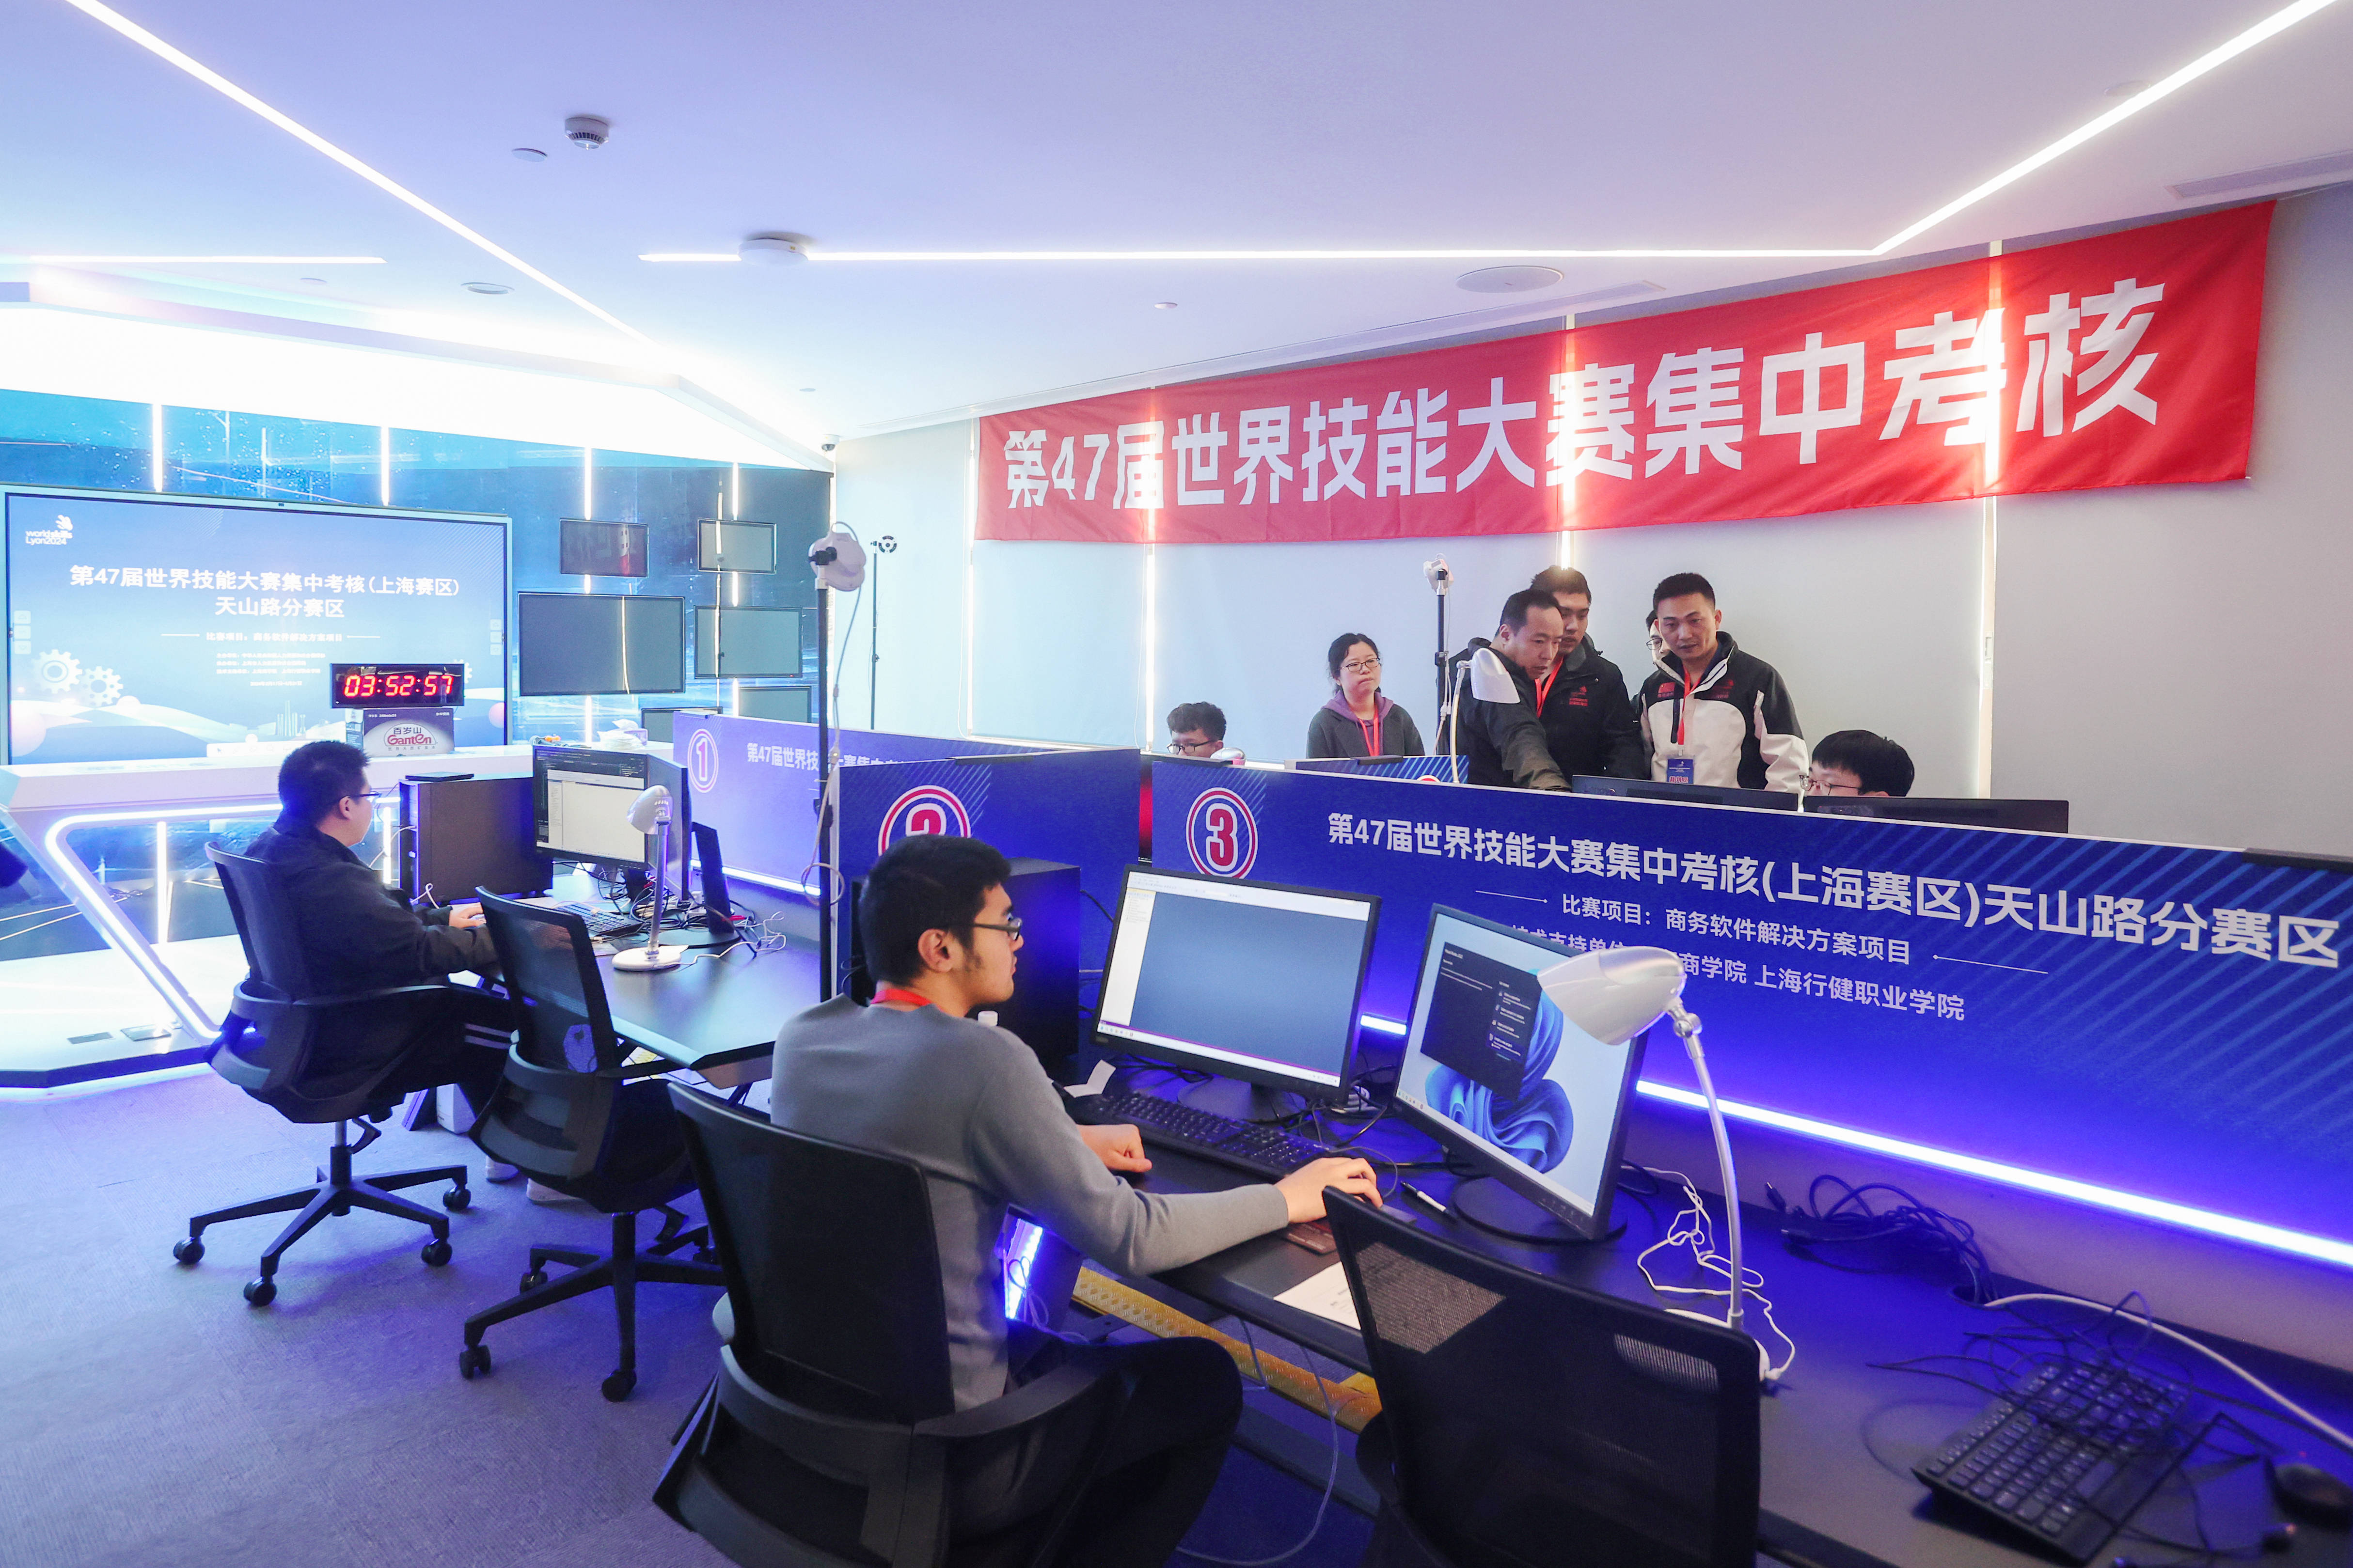 第47届世界技能大赛集中考核上海赛区正式启动